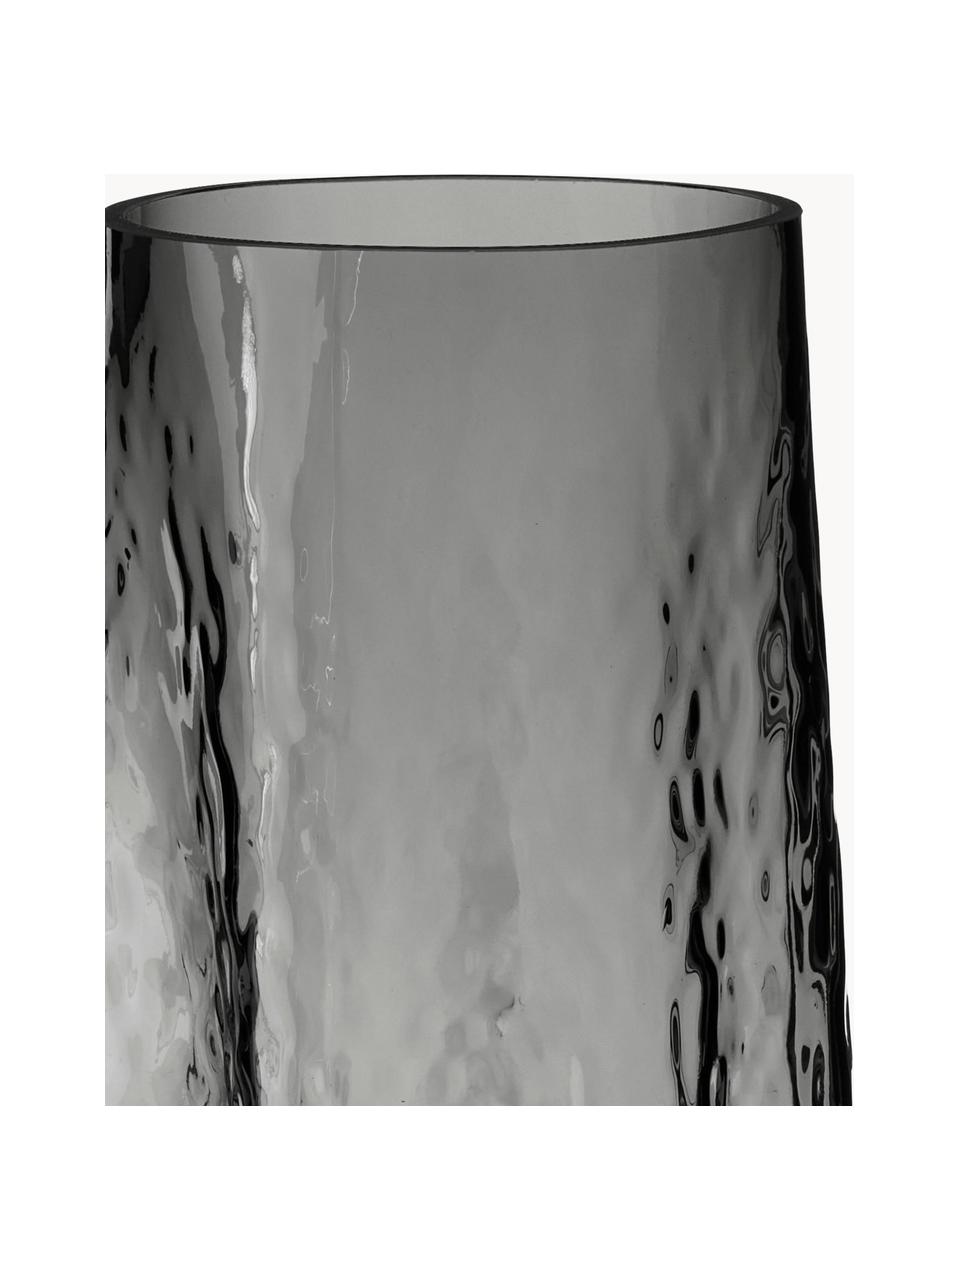 Vaso in vetro soffiato con superficie strutturata Gry, alt. 30 cm, Vetro soffiato, Antracite, Ø 15 x Alt. 30 cm